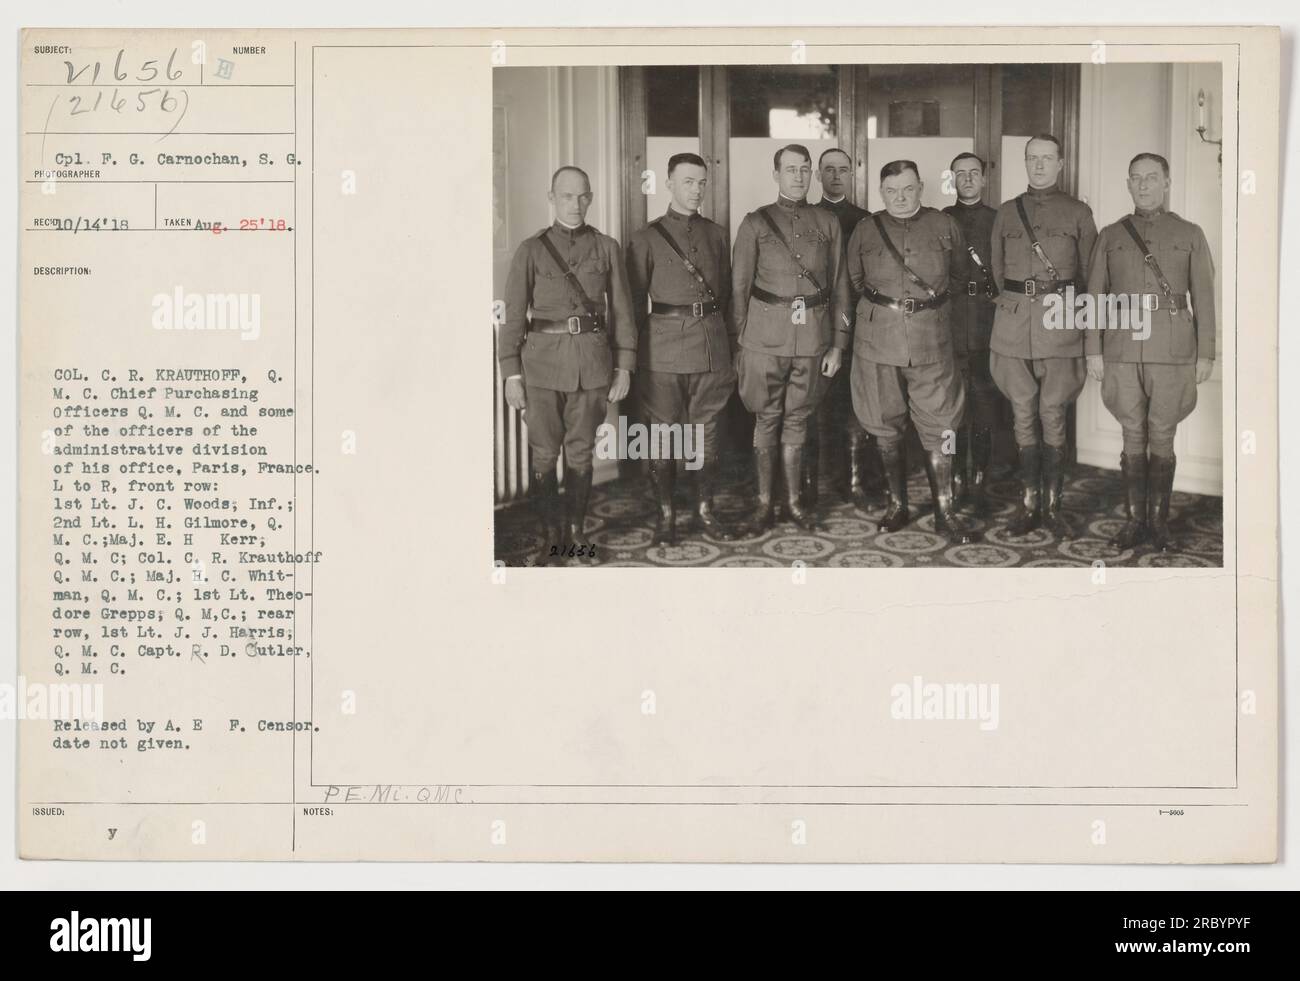 Il colonnello C. R. Krauthoff, Chief Purchasing Officer del Quartermaster Corps, è raffigurato con gli ufficiali della divisione amministrativa del suo ufficio a Parigi, in Francia. Prima fila, da L a R: 1st Lt. J. C. Woods; 2nd Lt. L. H. Gilmore; Maj. E. H. Kerr; Coll. C. R. Krauthoff; Maj. H. C. Whitman; 1st Lt. Theodore Grepps; Rear Row, Lt. J. J. Harris; Capt. R. D. Cutler. Fotografia rilasciata da A.E.F. censor. Data non specificata. Rilasciato da PE.ML. QMC. Note non fornite. Foto Stock